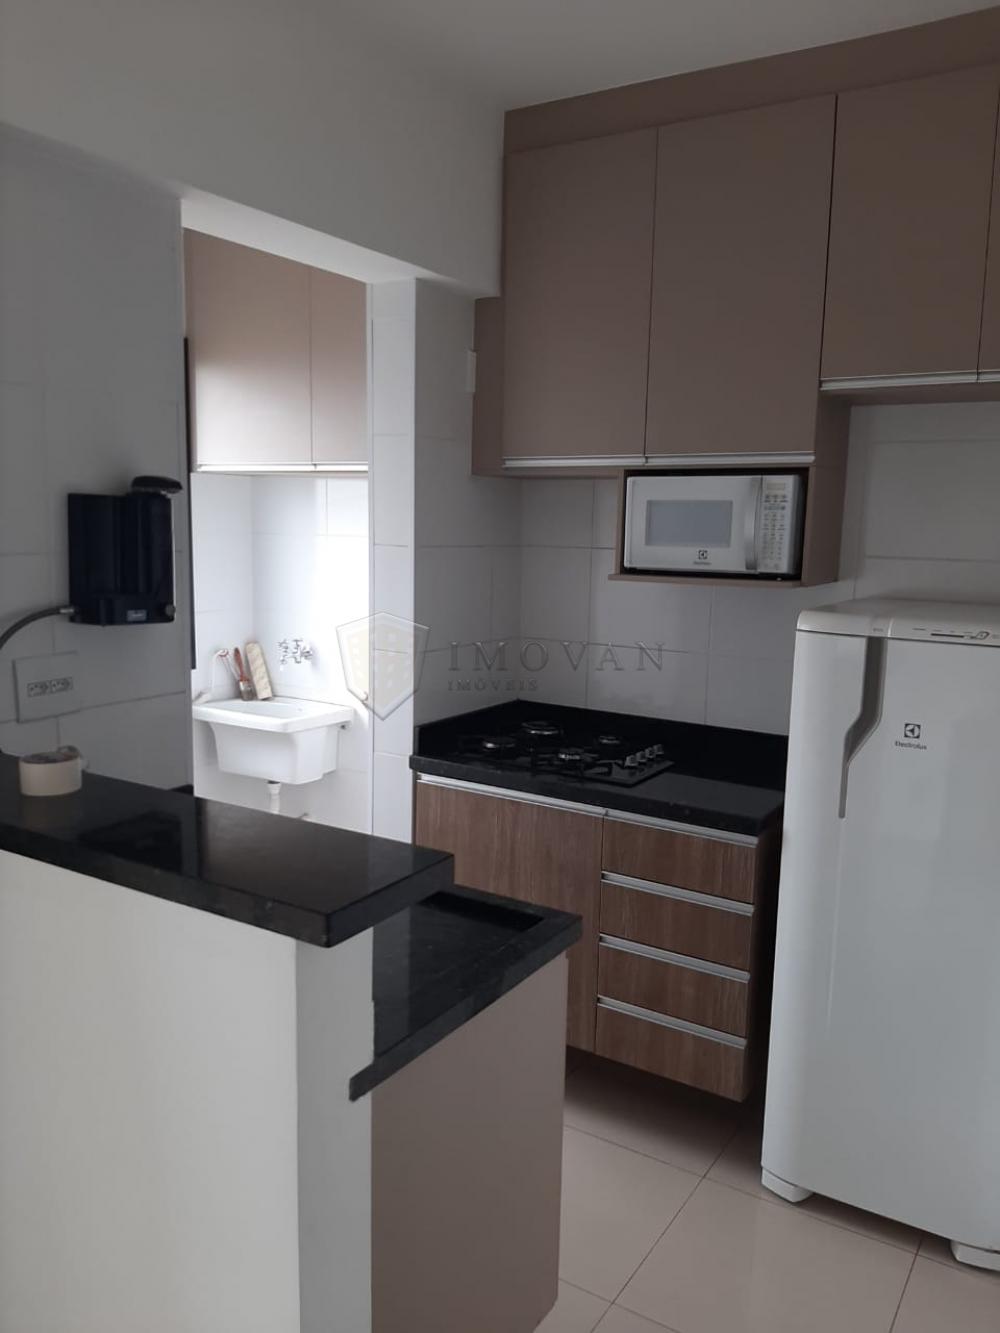 Comprar Apartamento / Kitchnet em Ribeirão Preto R$ 225.000,00 - Foto 2